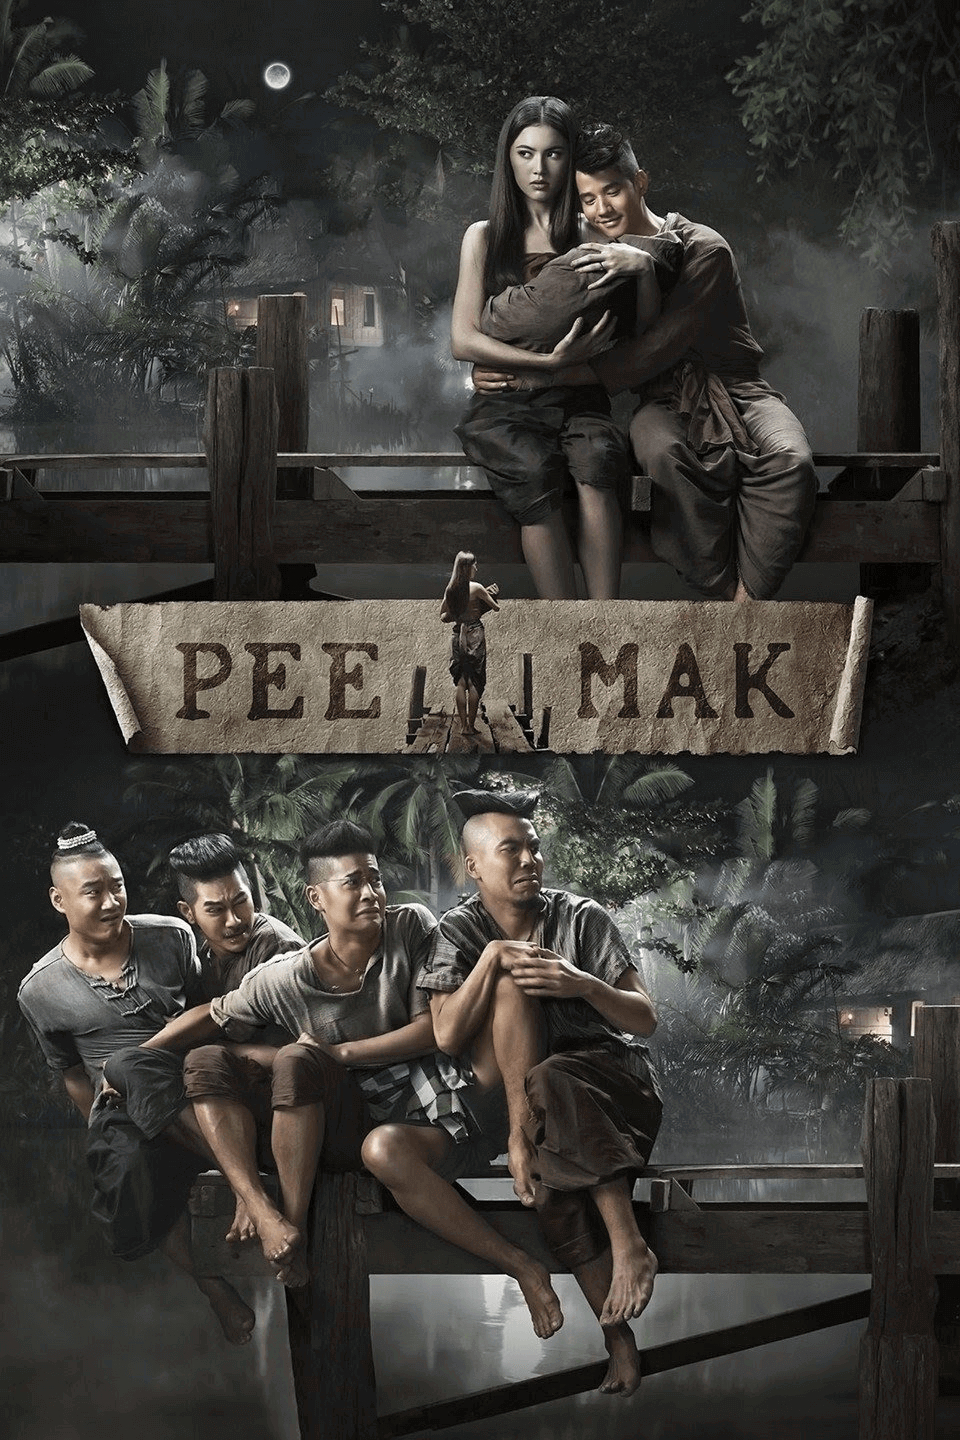 Phim Thái Lan hay nhất mọi thời đại: Tình người duyên ma - Pee Mak (2013)